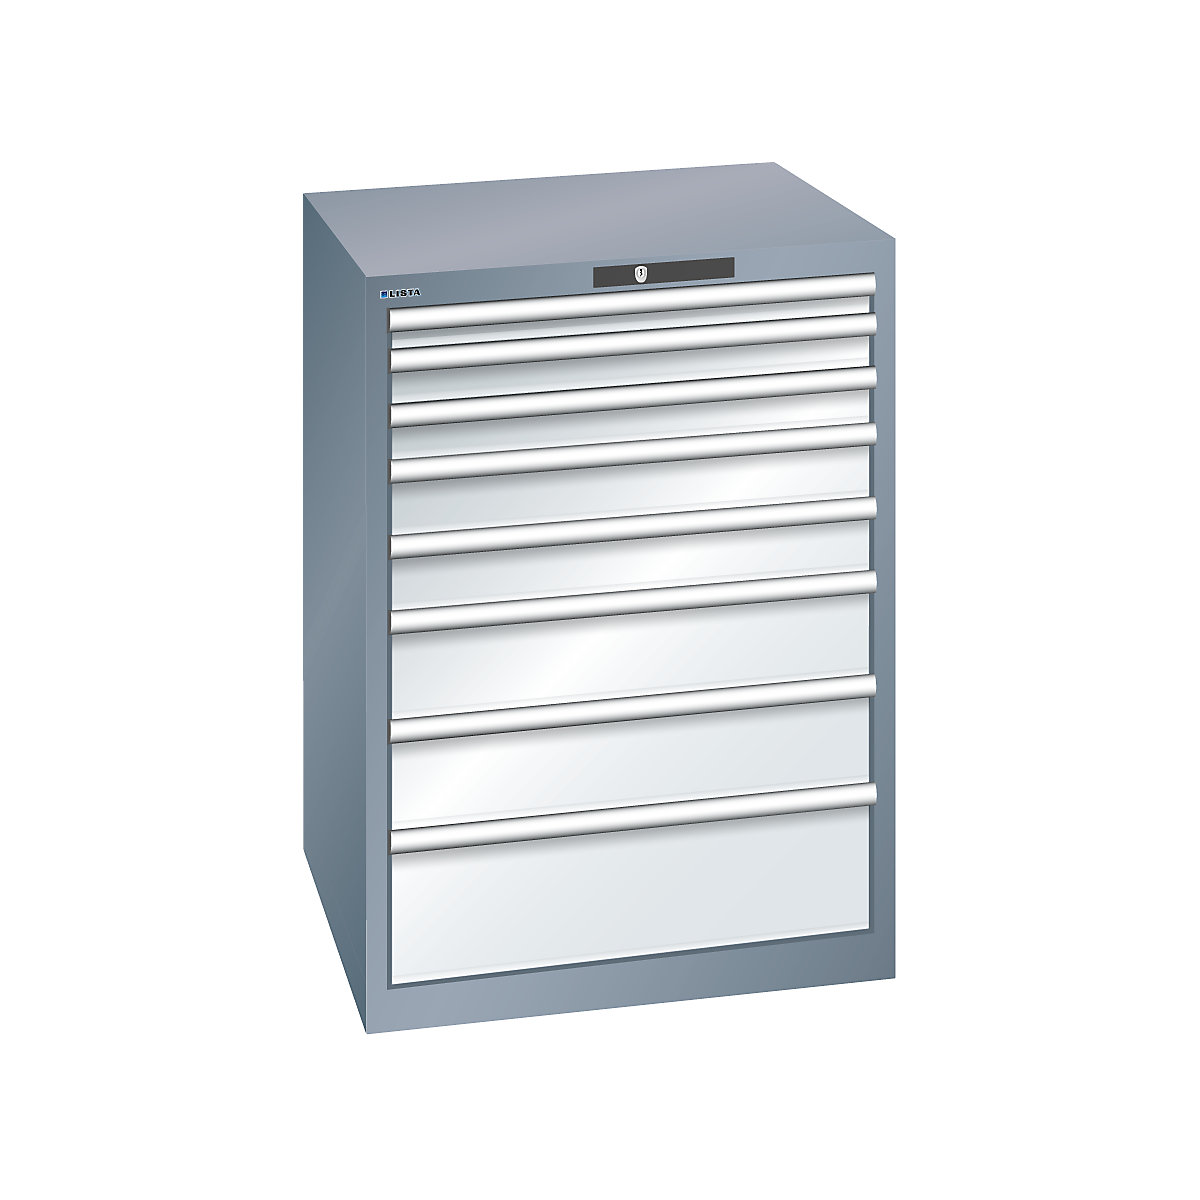 LISTA – Armoire à tiroirs en tôle d'acier, h x l 1000 x 717 mm, 8 tiroirs, gris métallisé / gris clair